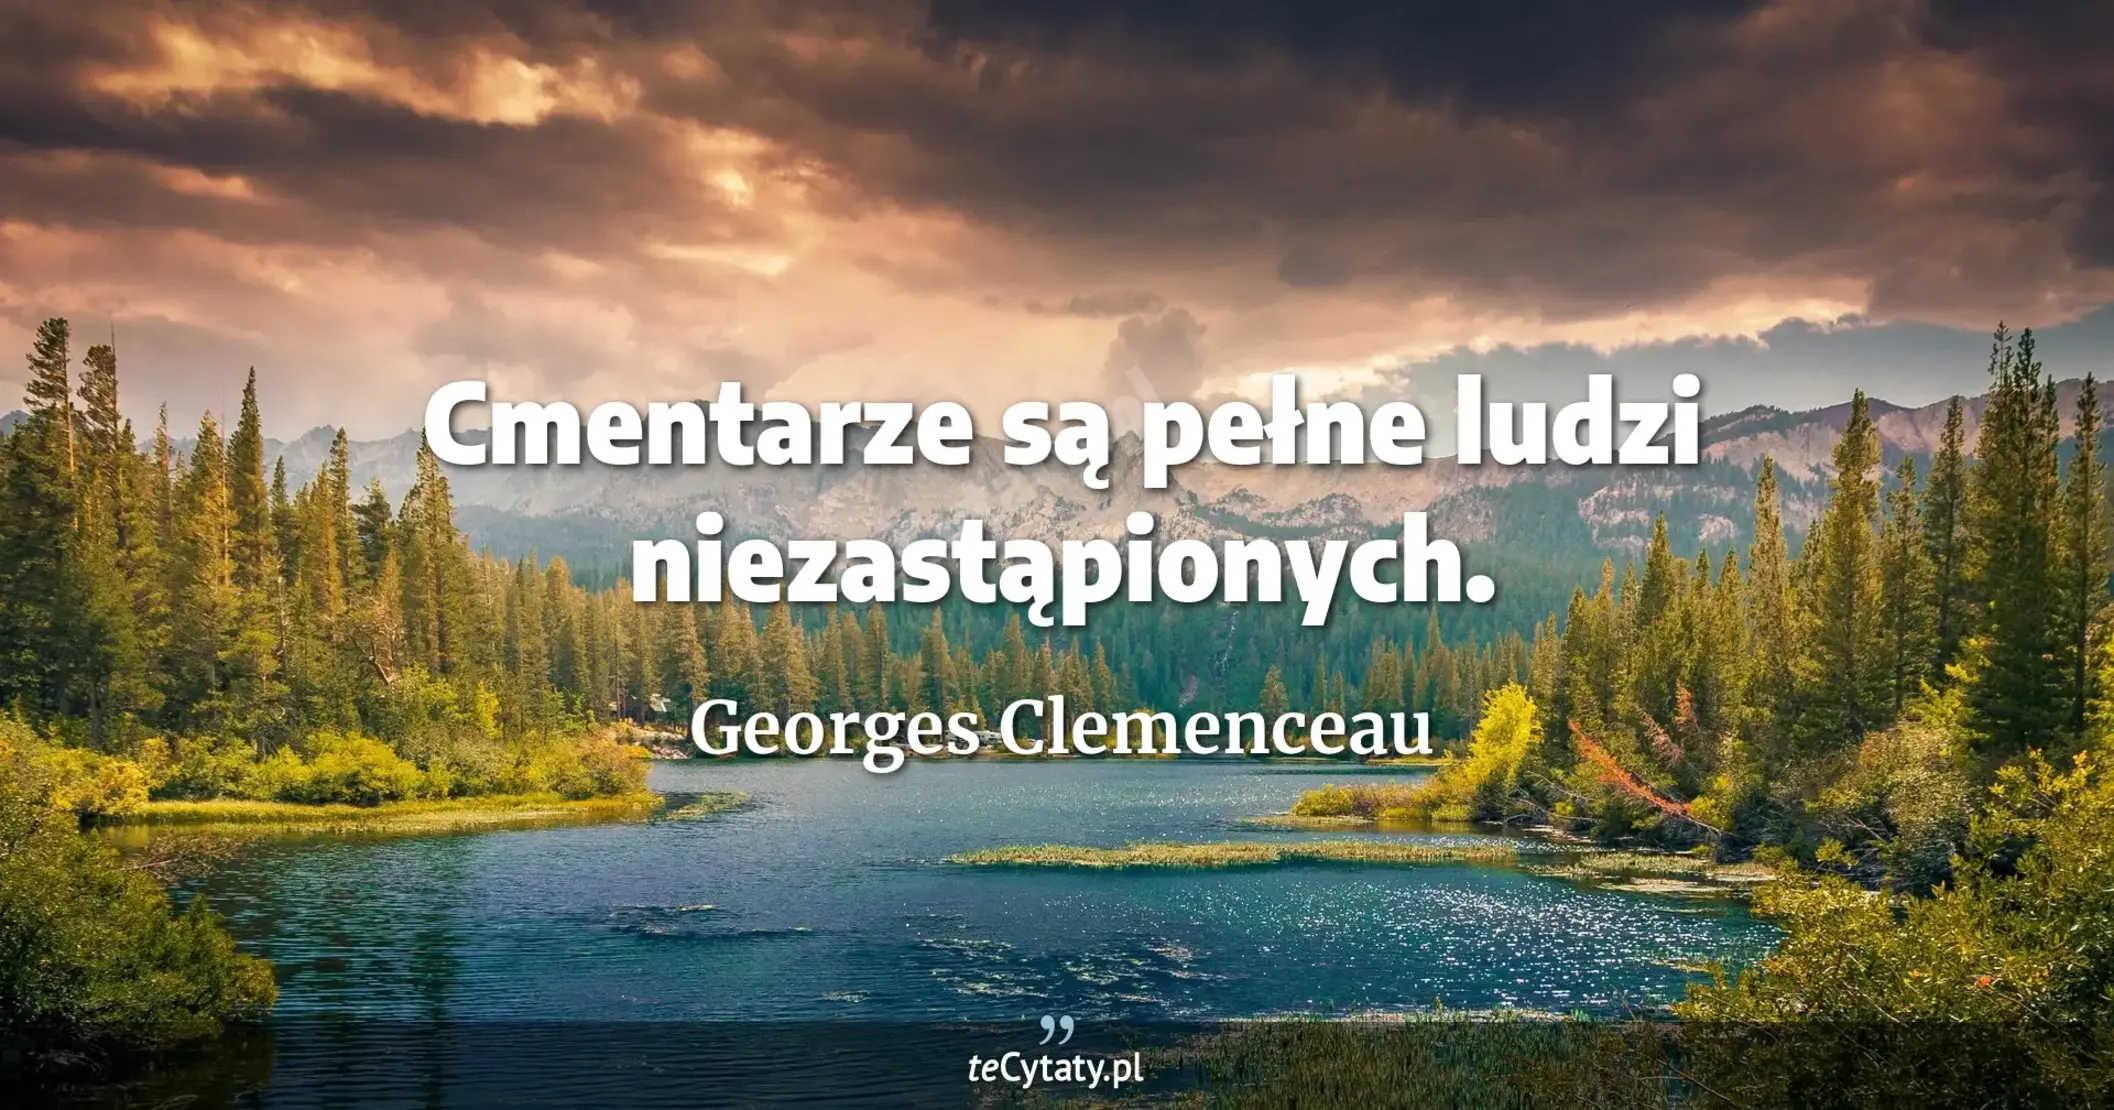 Cmentarze są pełne ludzi niezastąpionych. - Georges Clemenceau